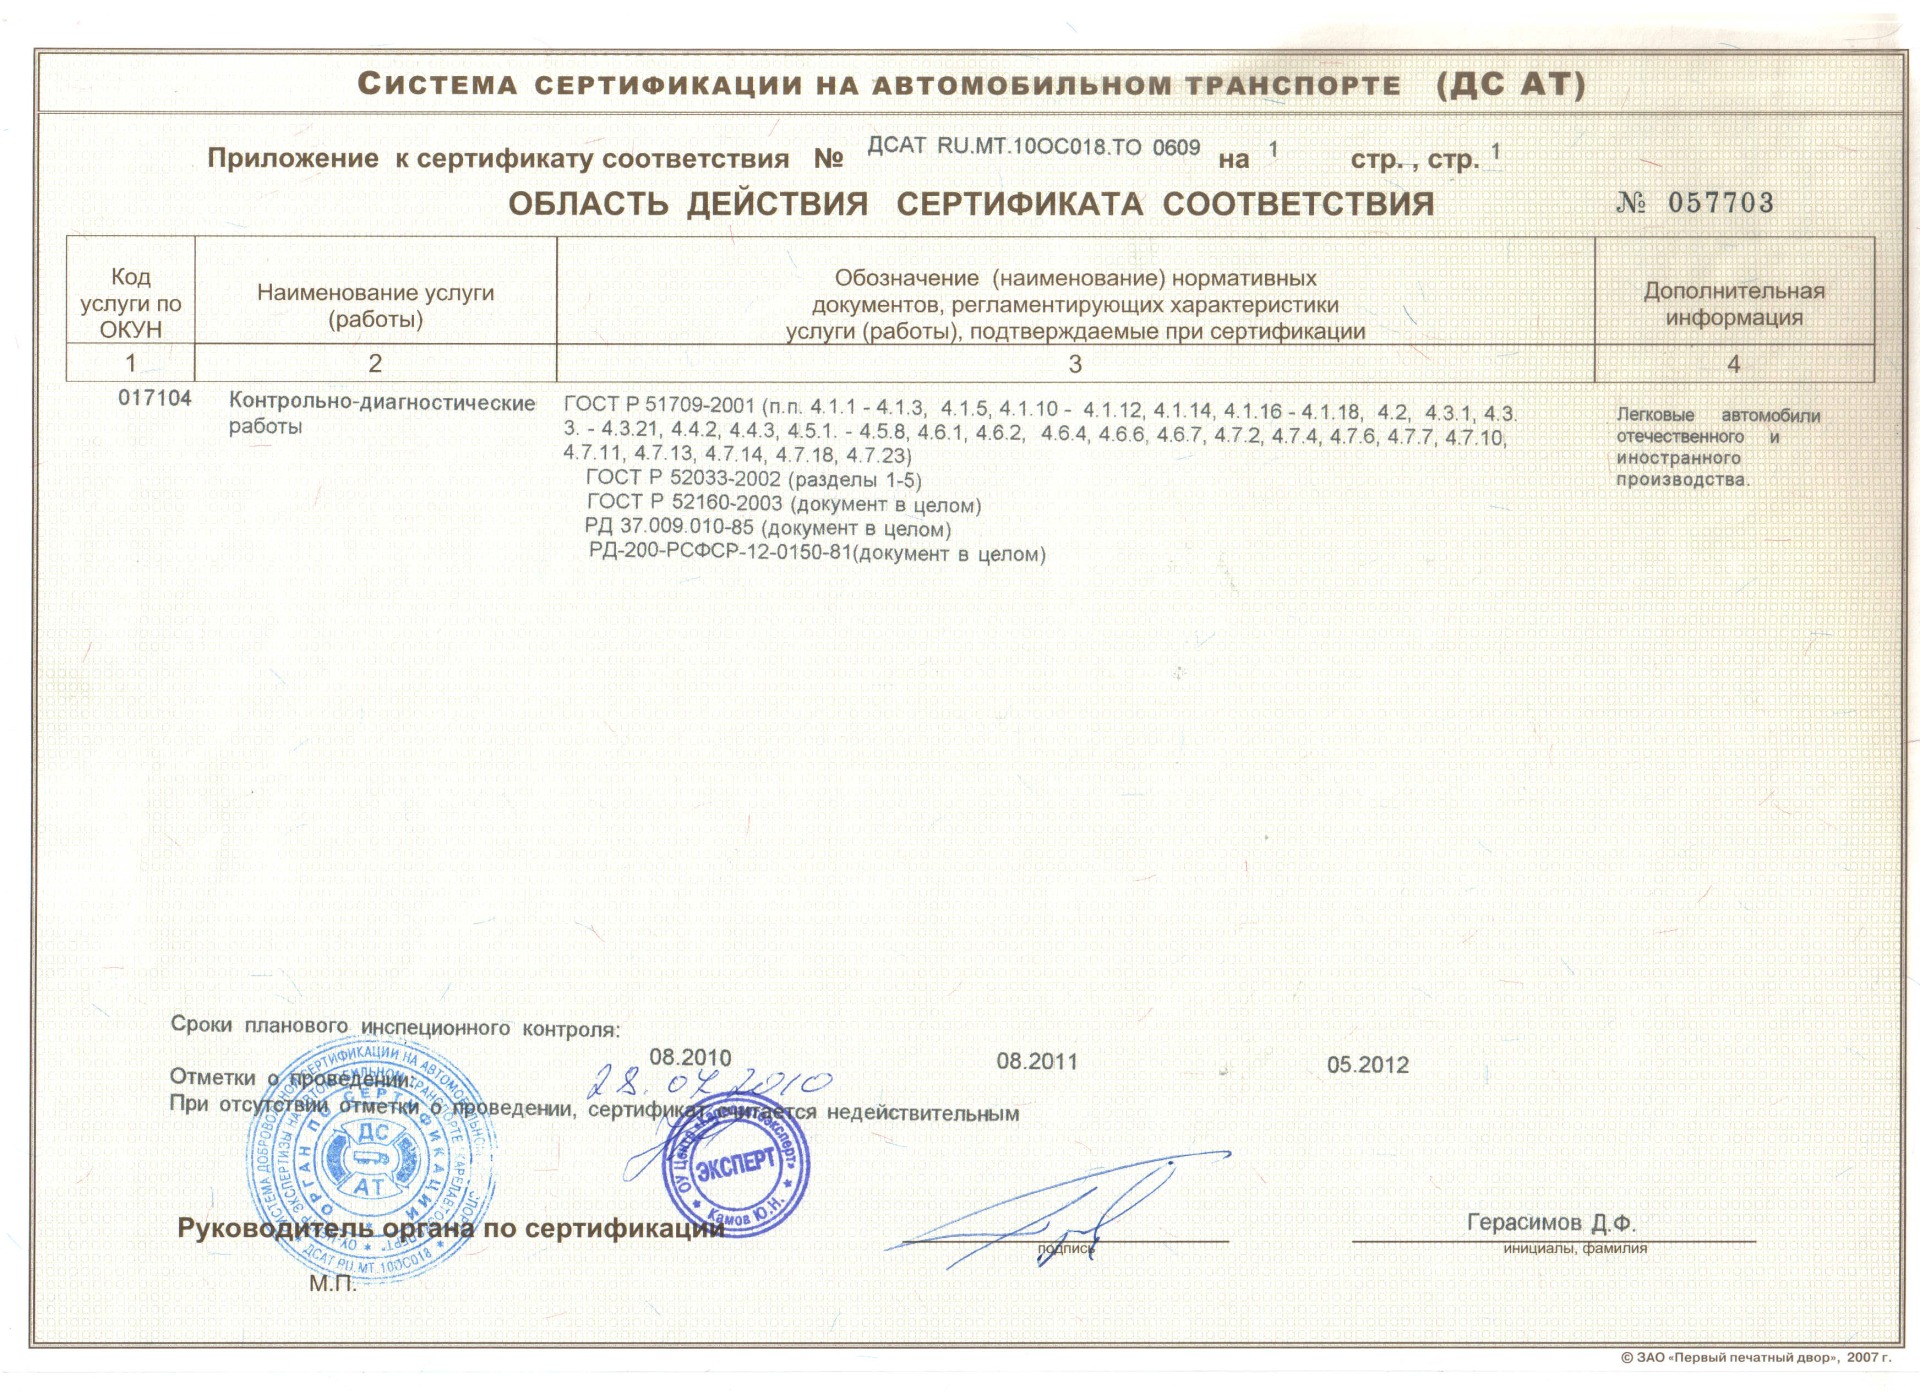 Компьютерная диагностика двигателя Лекс Мотром Петрозаводск сертификат